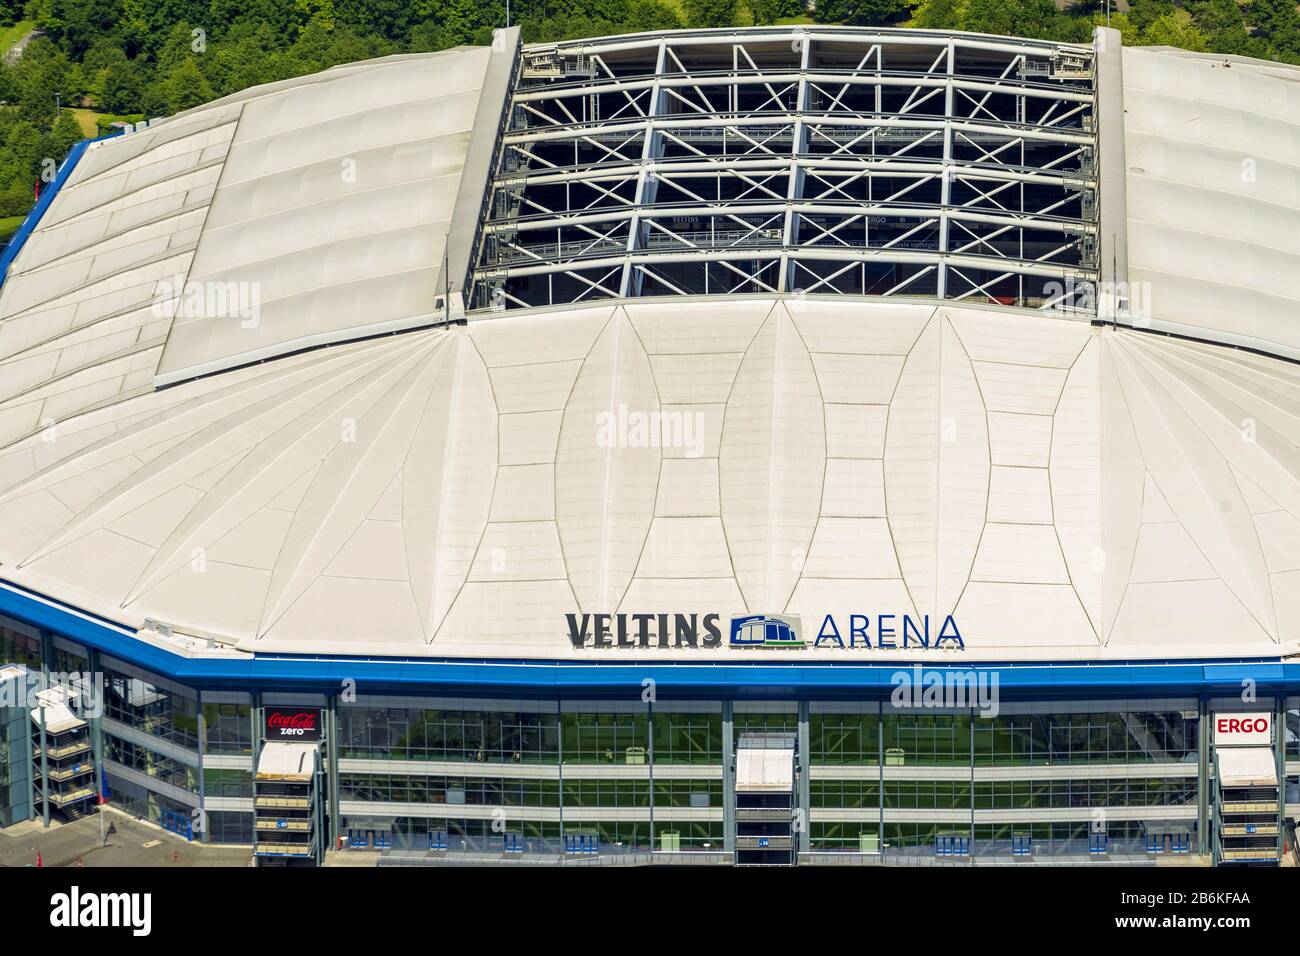 Veltins-Arena, à l'origine Arena AufSchalke, stade de football pour Schalke 04, vue aérienne, Allemagne, Rhénanie-du-Nord-Westphalie, région de la Ruhr, Gelsenkirchen Banque D'Images